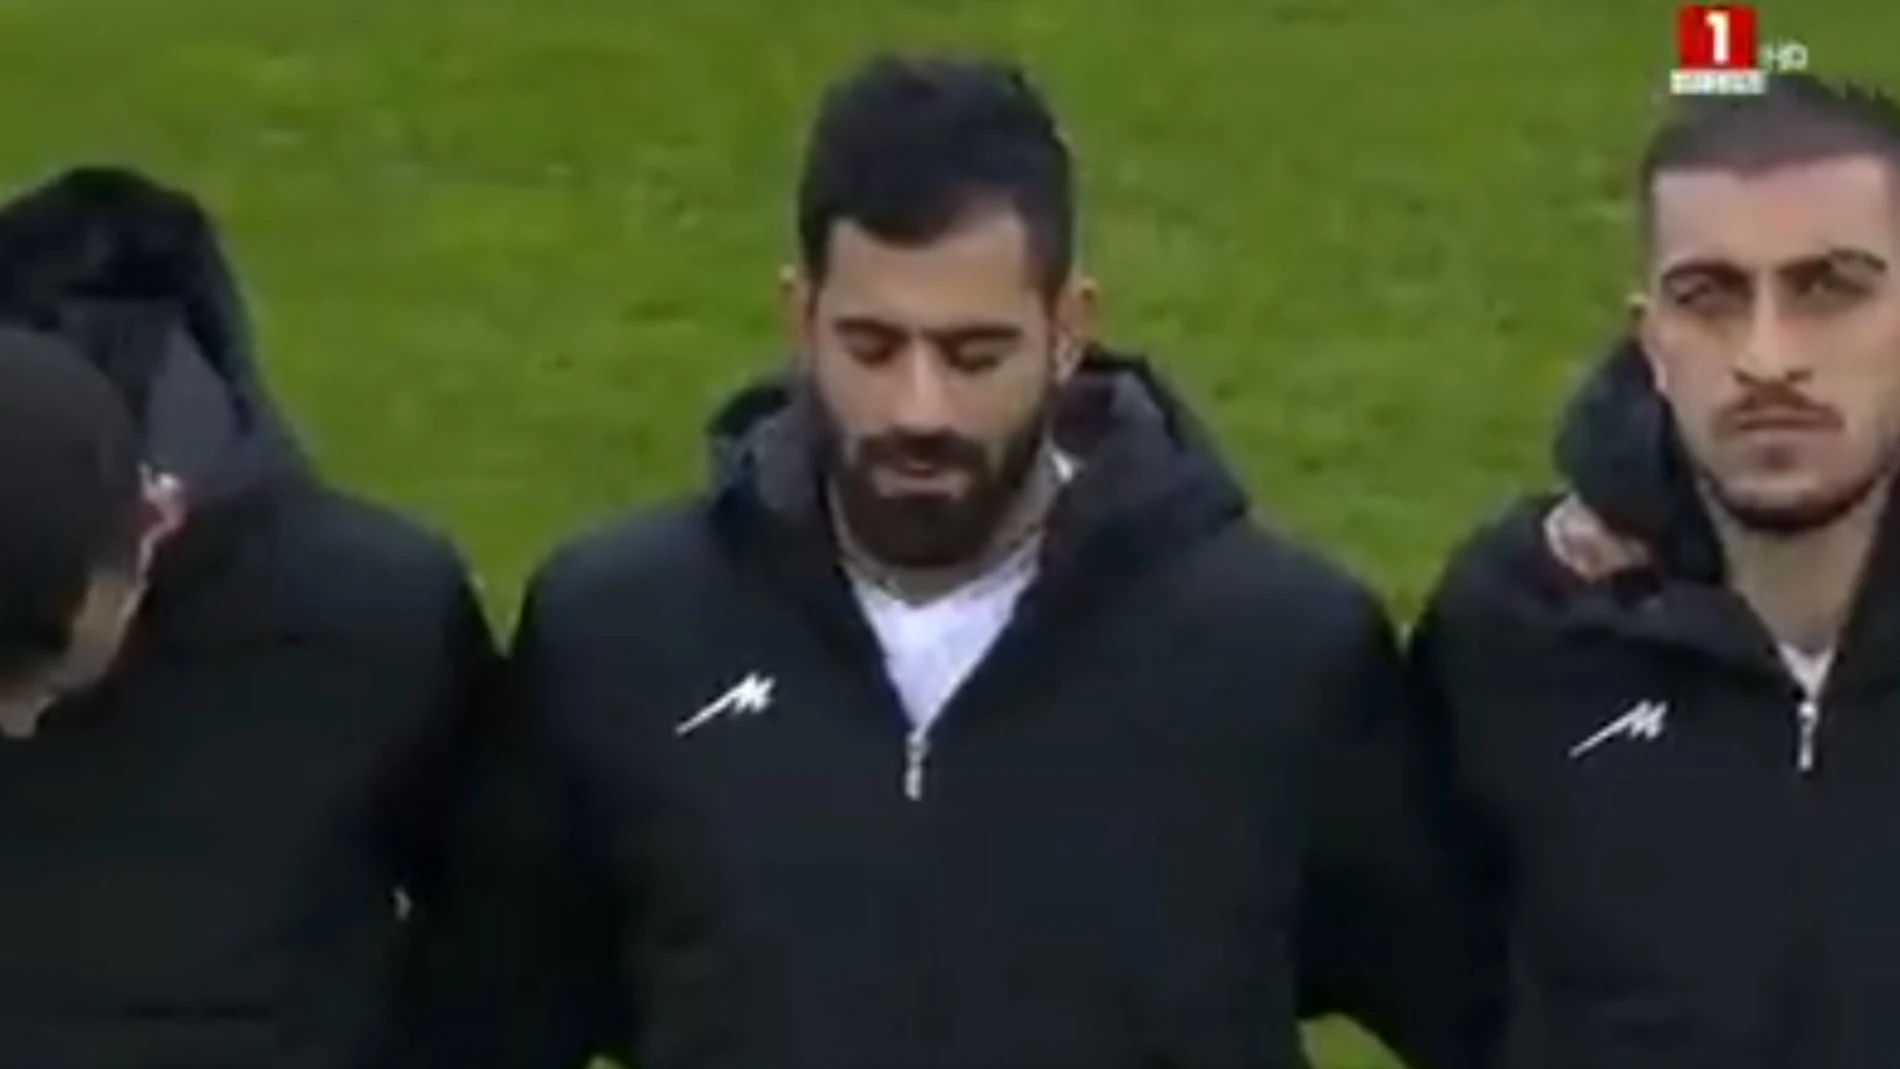 Los jugadores iraníes, con chaquetas sin el escudo